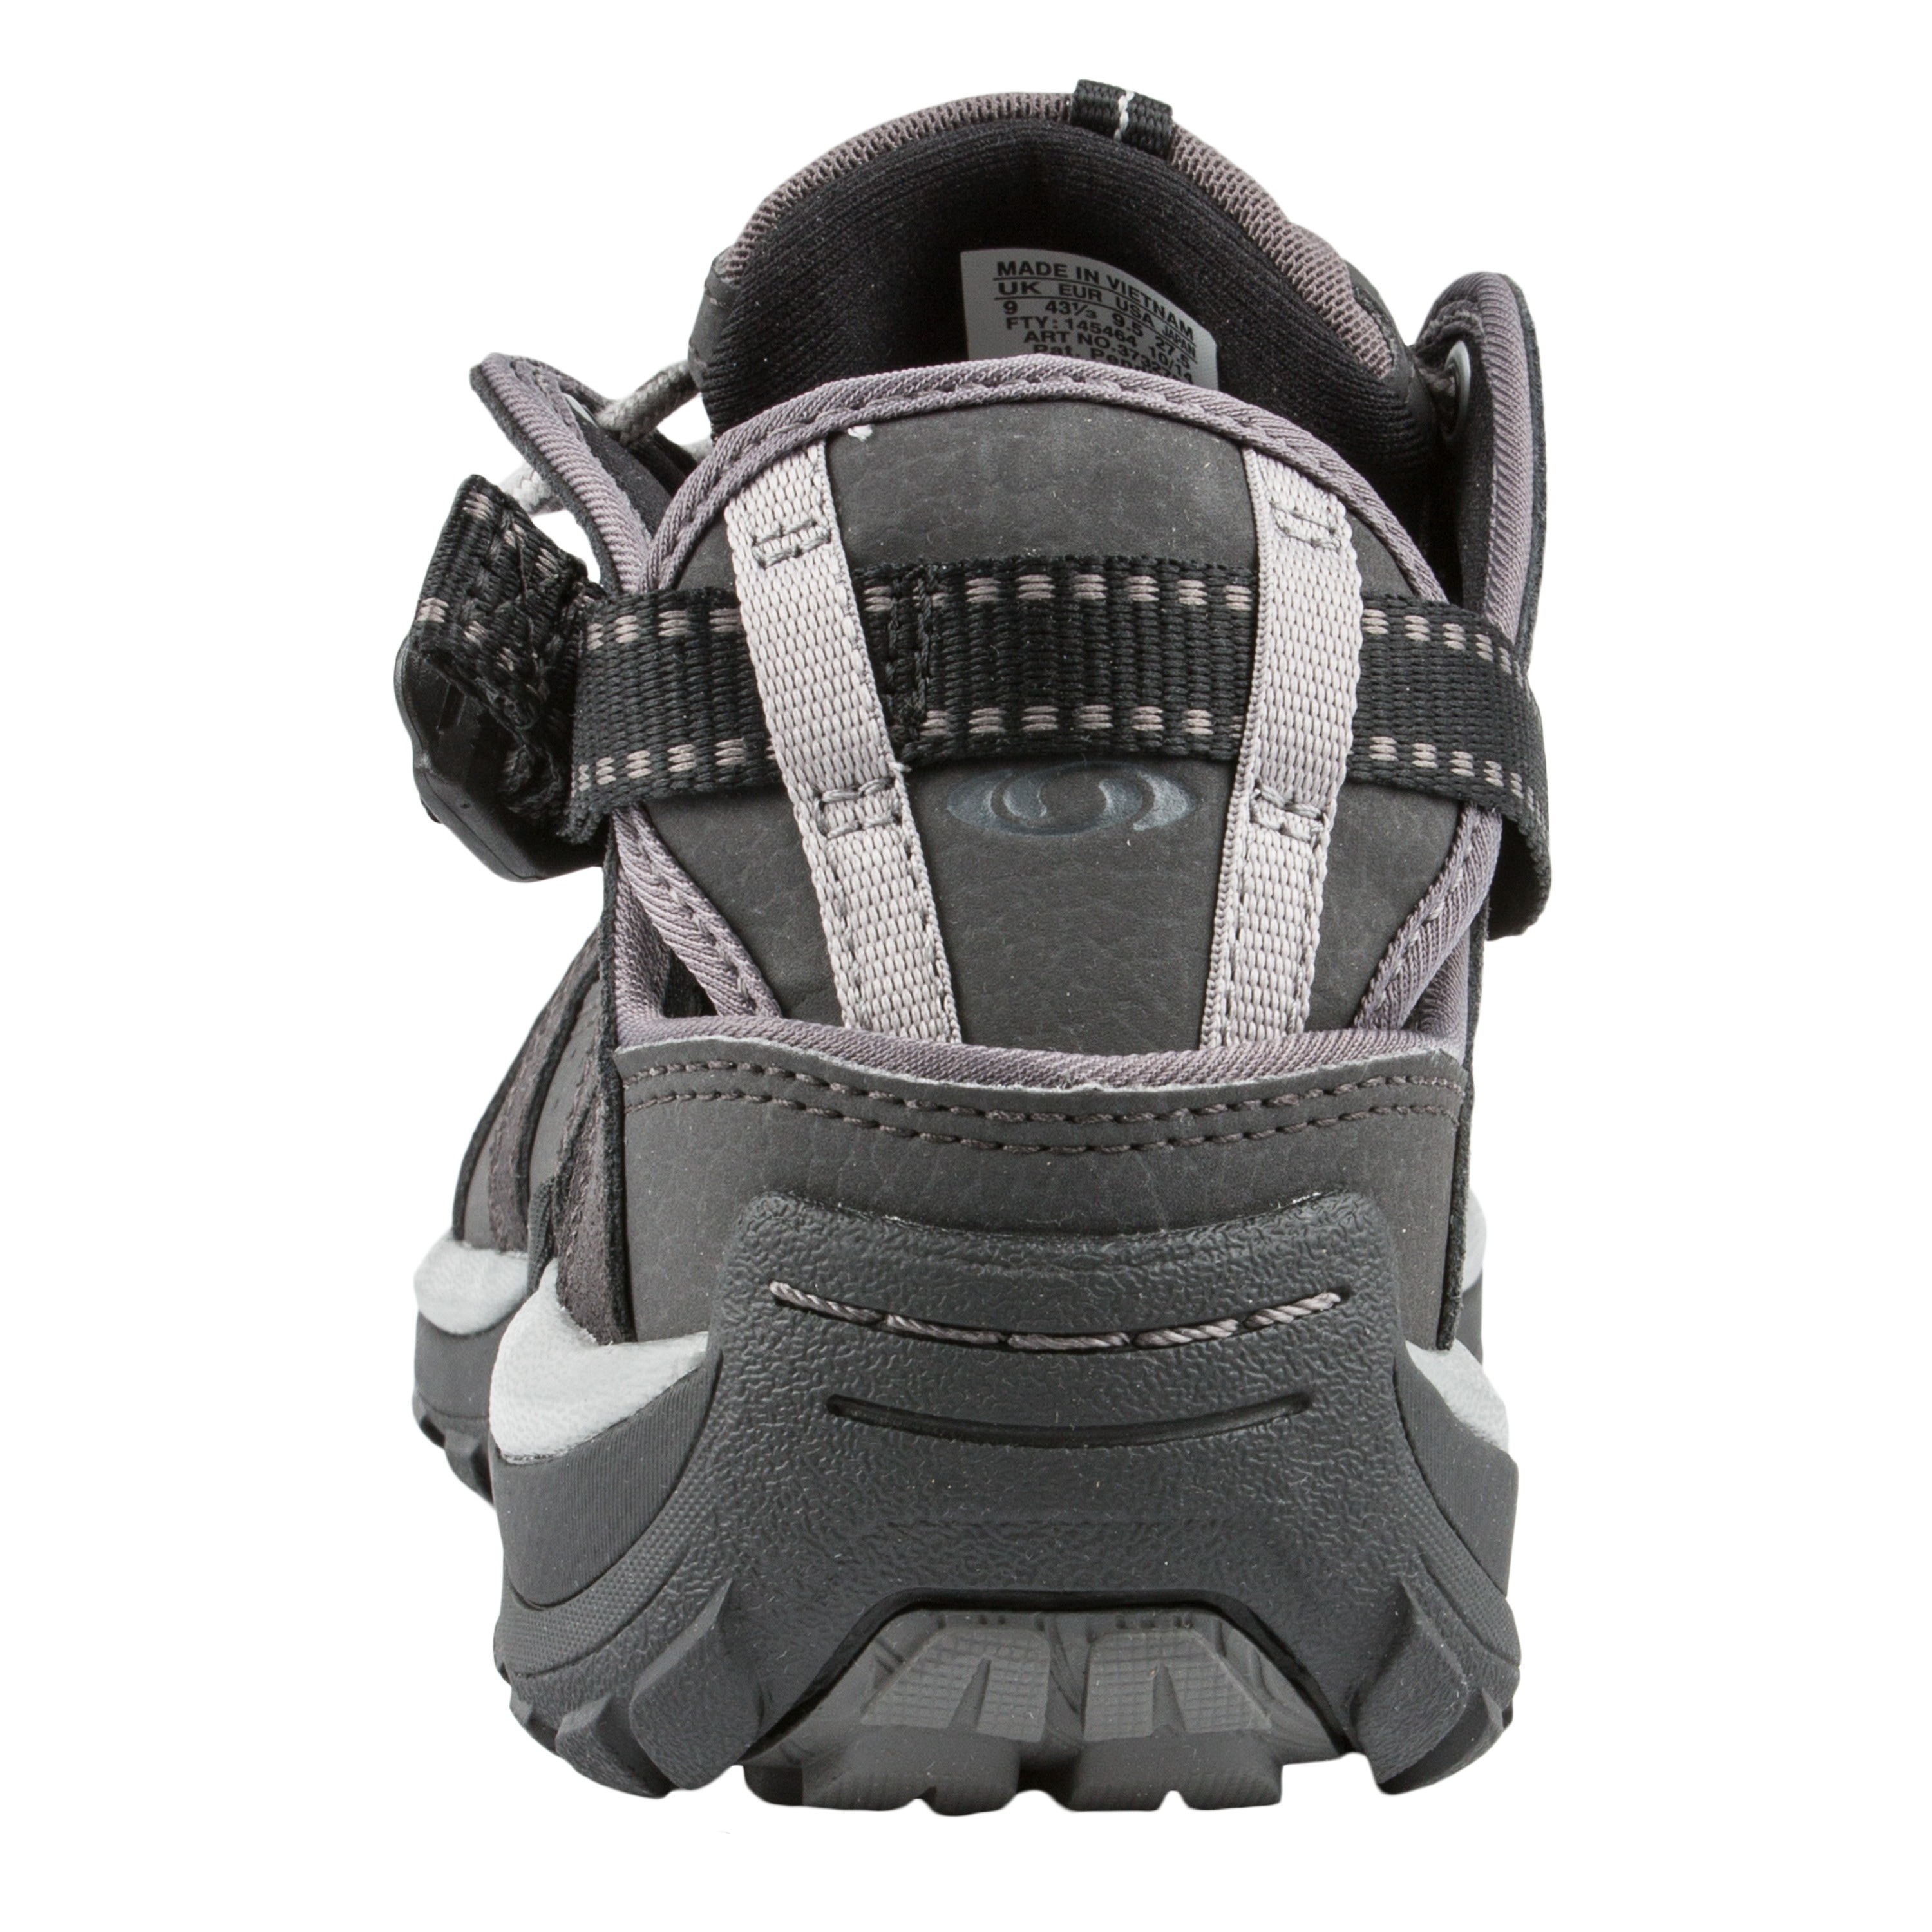 Salomon Outdoor Sandals Epic Cabrio black | Salomon Outdoor Sandals Epic Cabrio 2 black Sandals | Footwear | Clothing